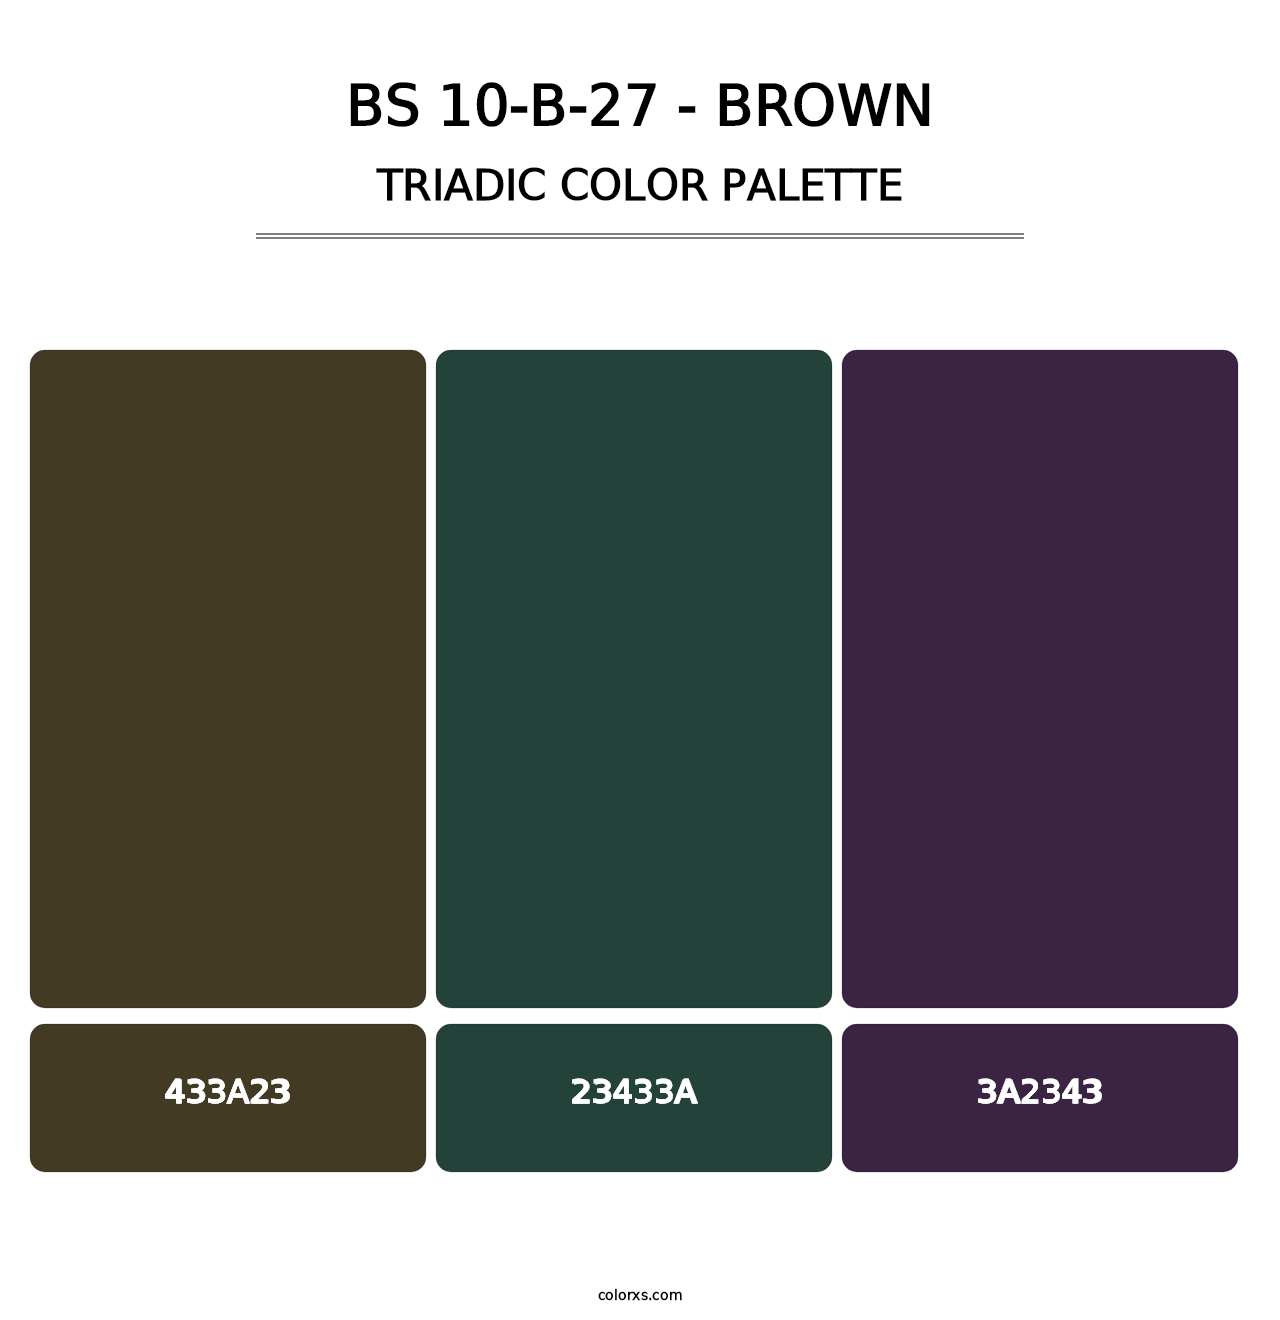 BS 10-B-27 - Brown - Triadic Color Palette